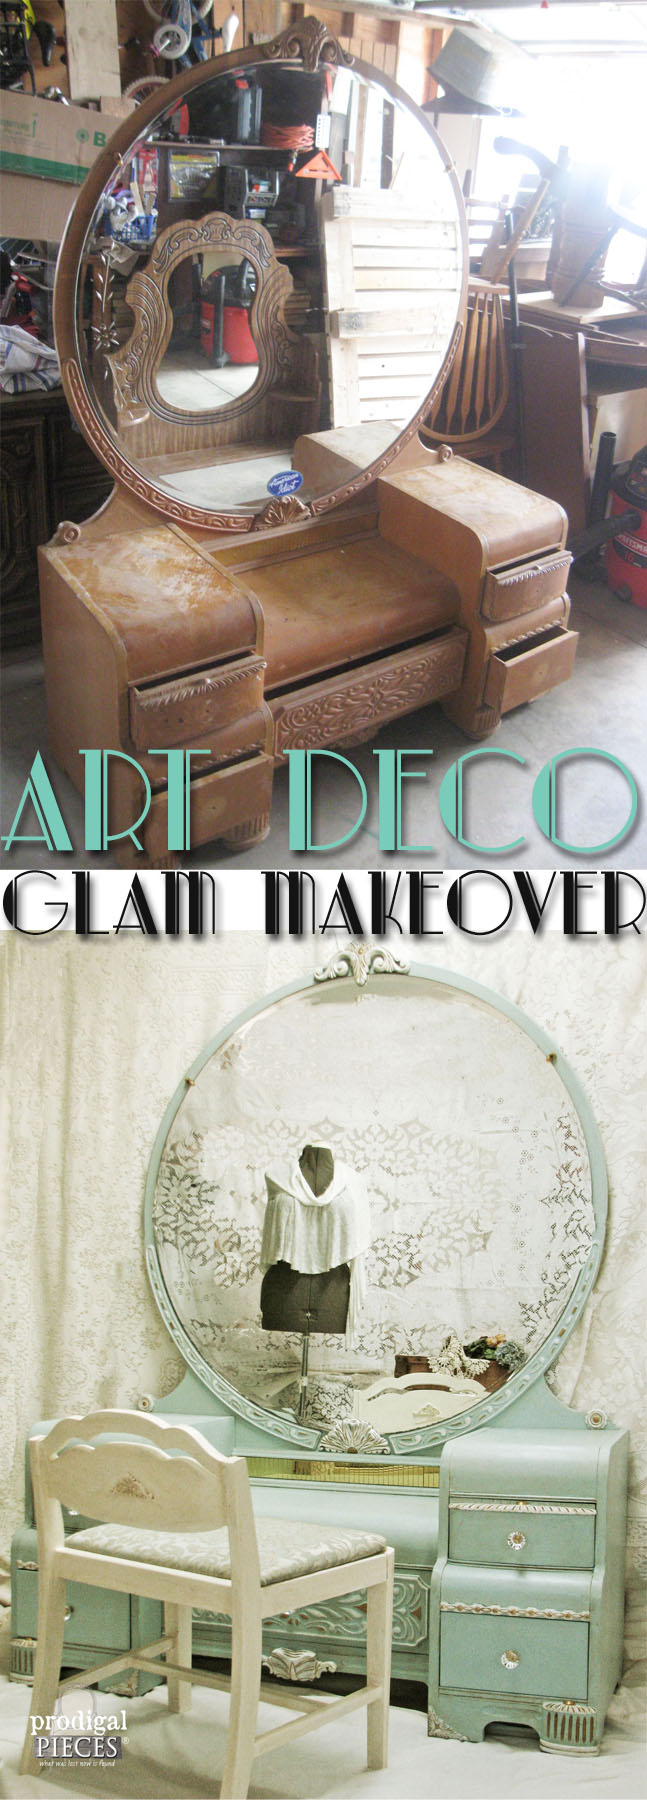 Art Deco Glam Makeover by Prodigal Pieces | www.prodigalpieces.com